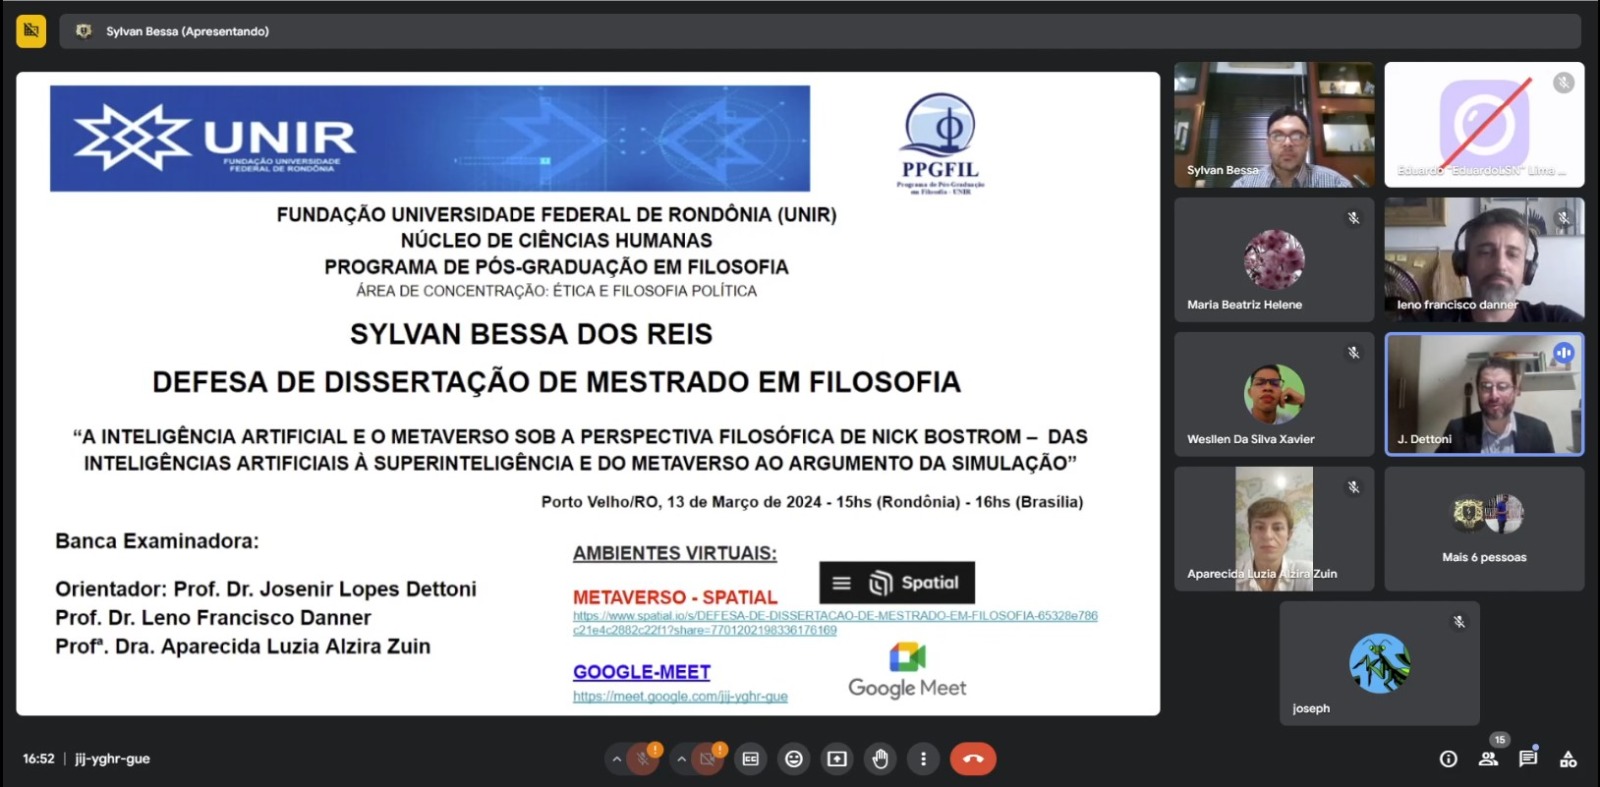 Realidades Expandidas: Uma Investigação Filosófica sobre o Metaverso - News Rondônia